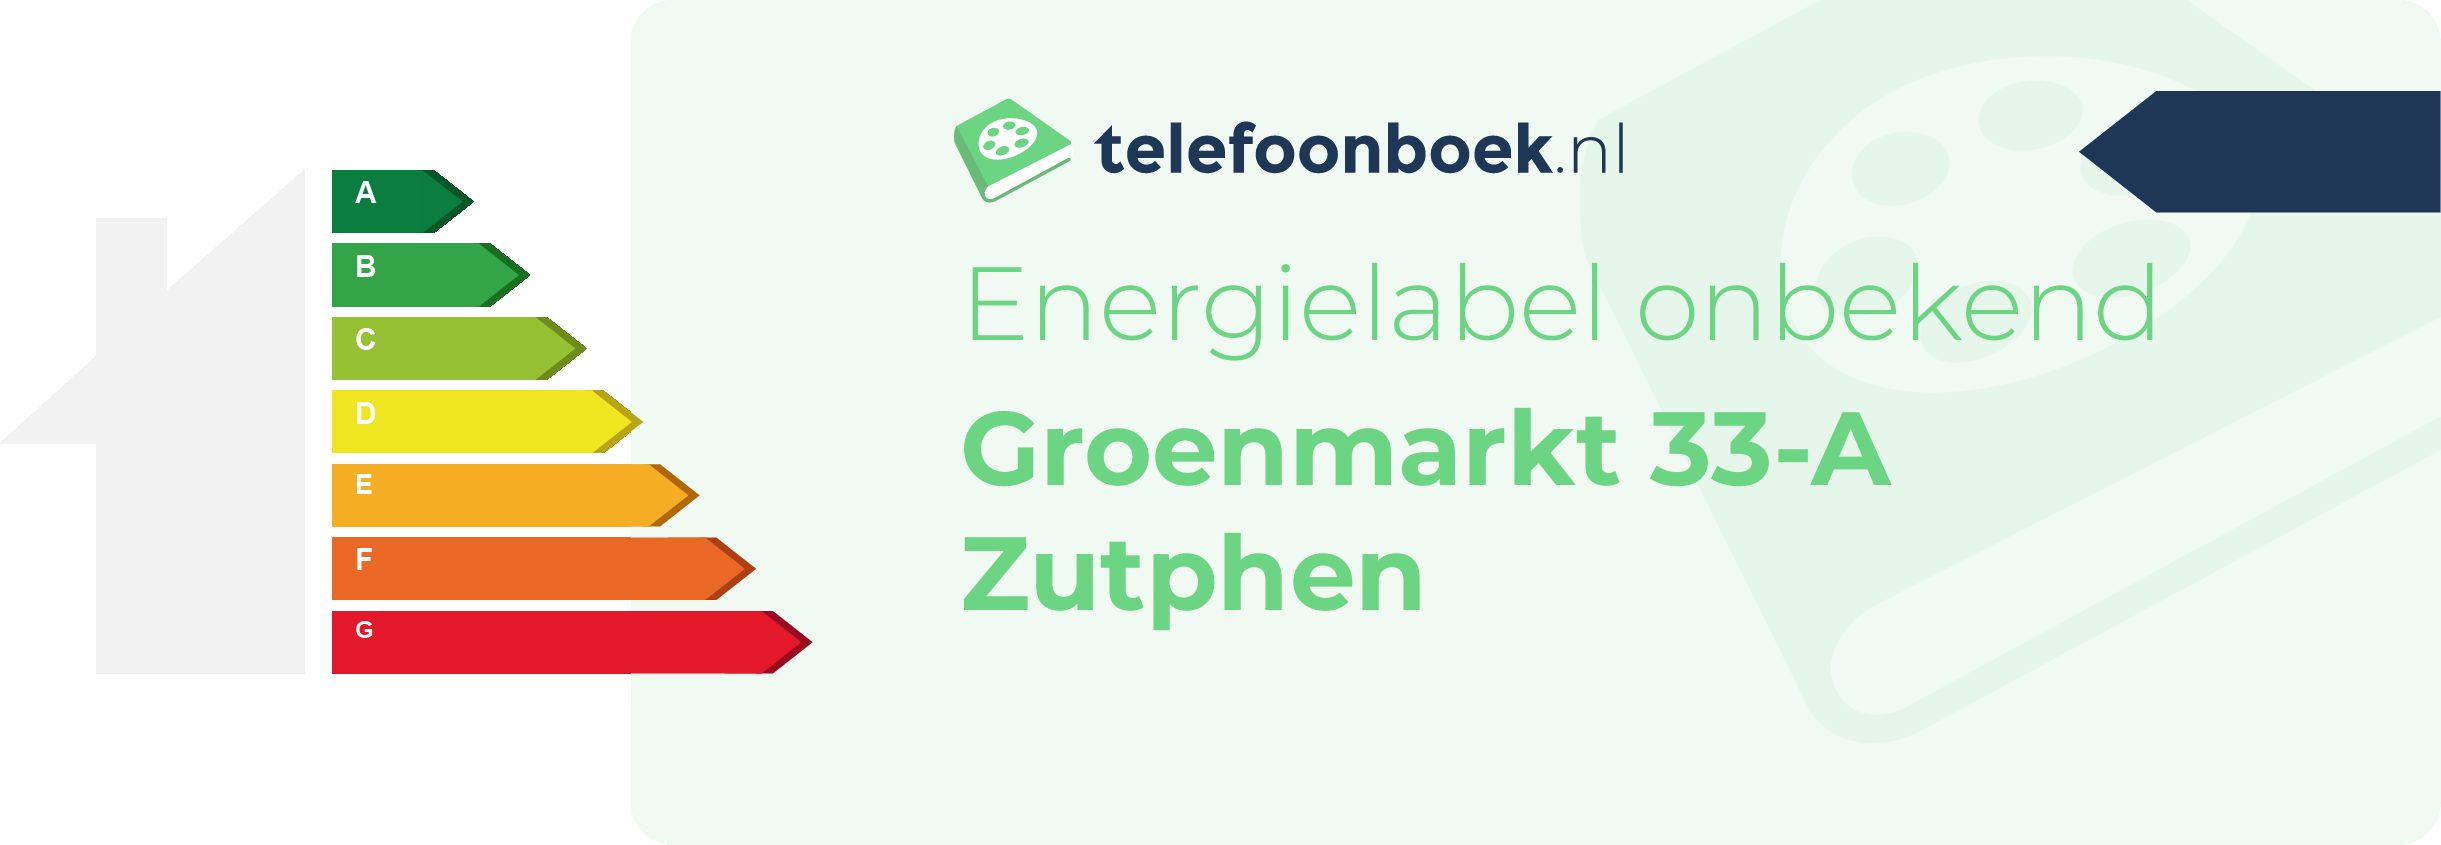 Energielabel Groenmarkt 33-A Zutphen